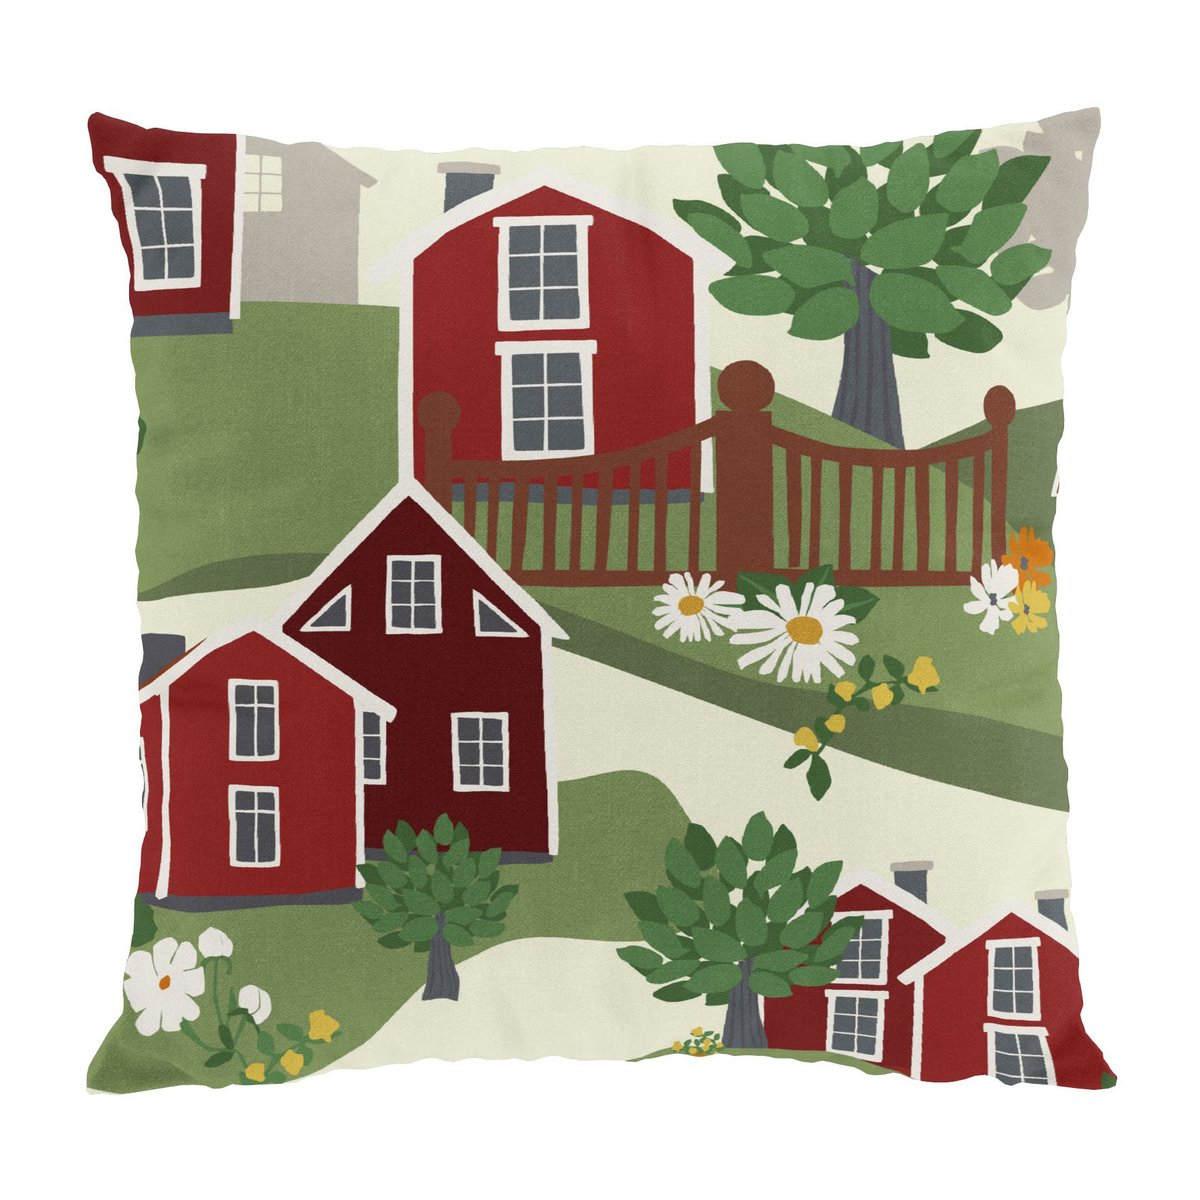 Bilde av Arvidssons Textil Katthult putetrekk 47 x 47 cm Grønn-rød